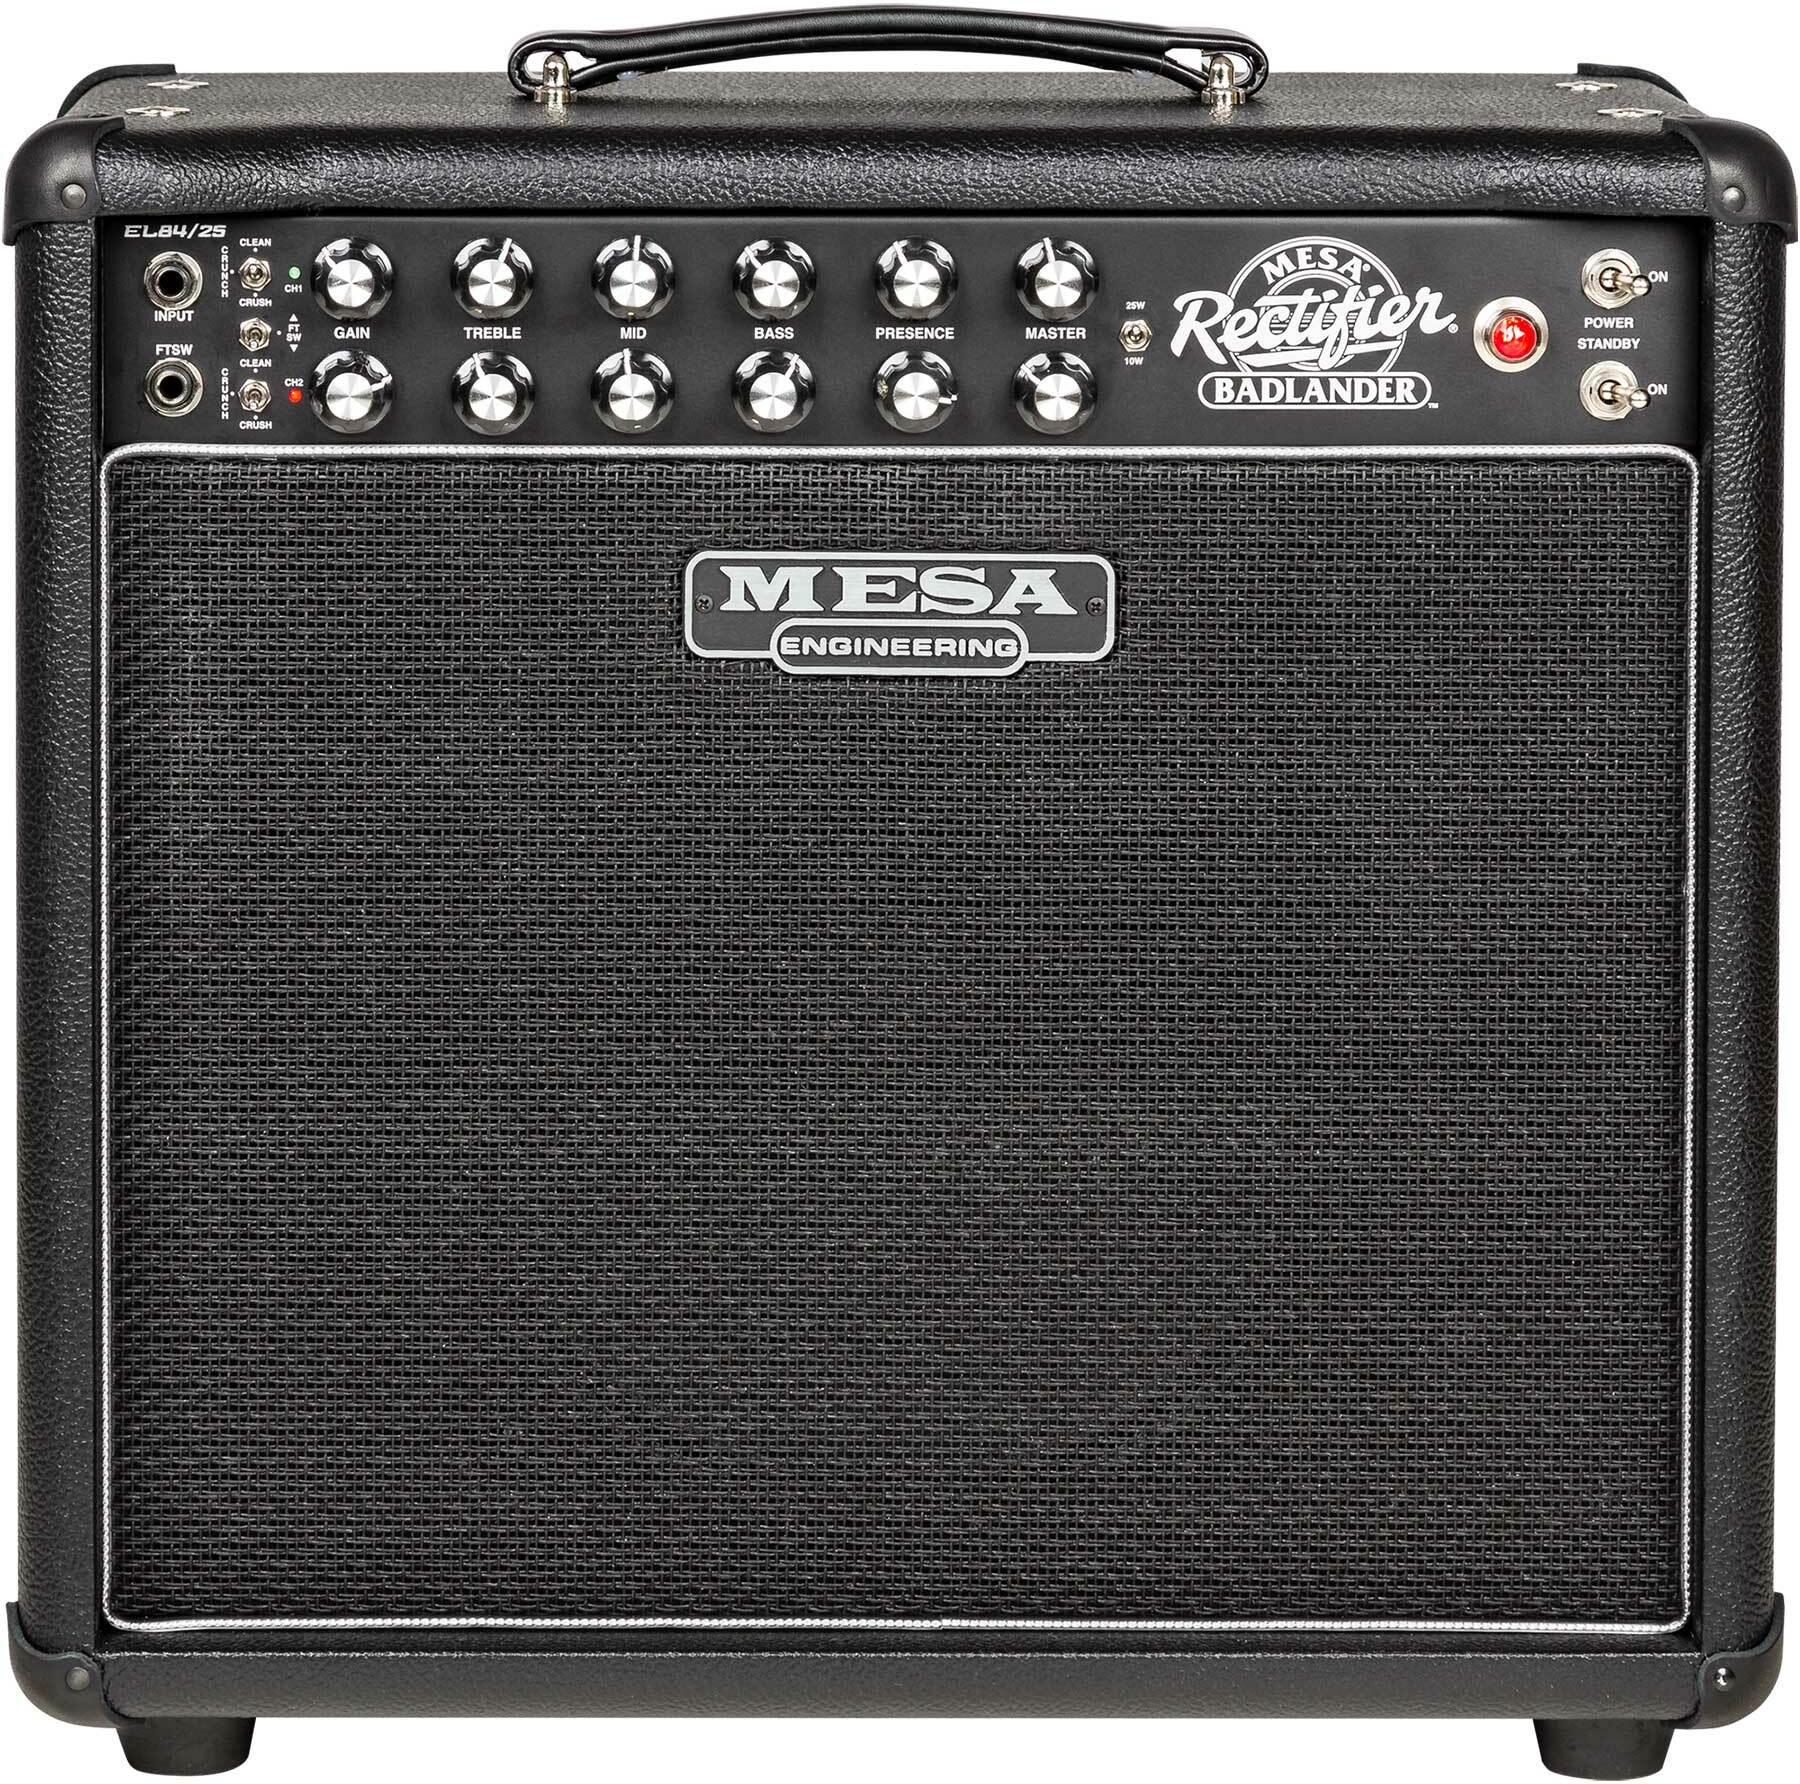 Mesa Boogie Badlander 25 1x12 Combo 10/25w 112 El84 Black Bronco - Combo amplificador para guitarra eléctrica - Main picture